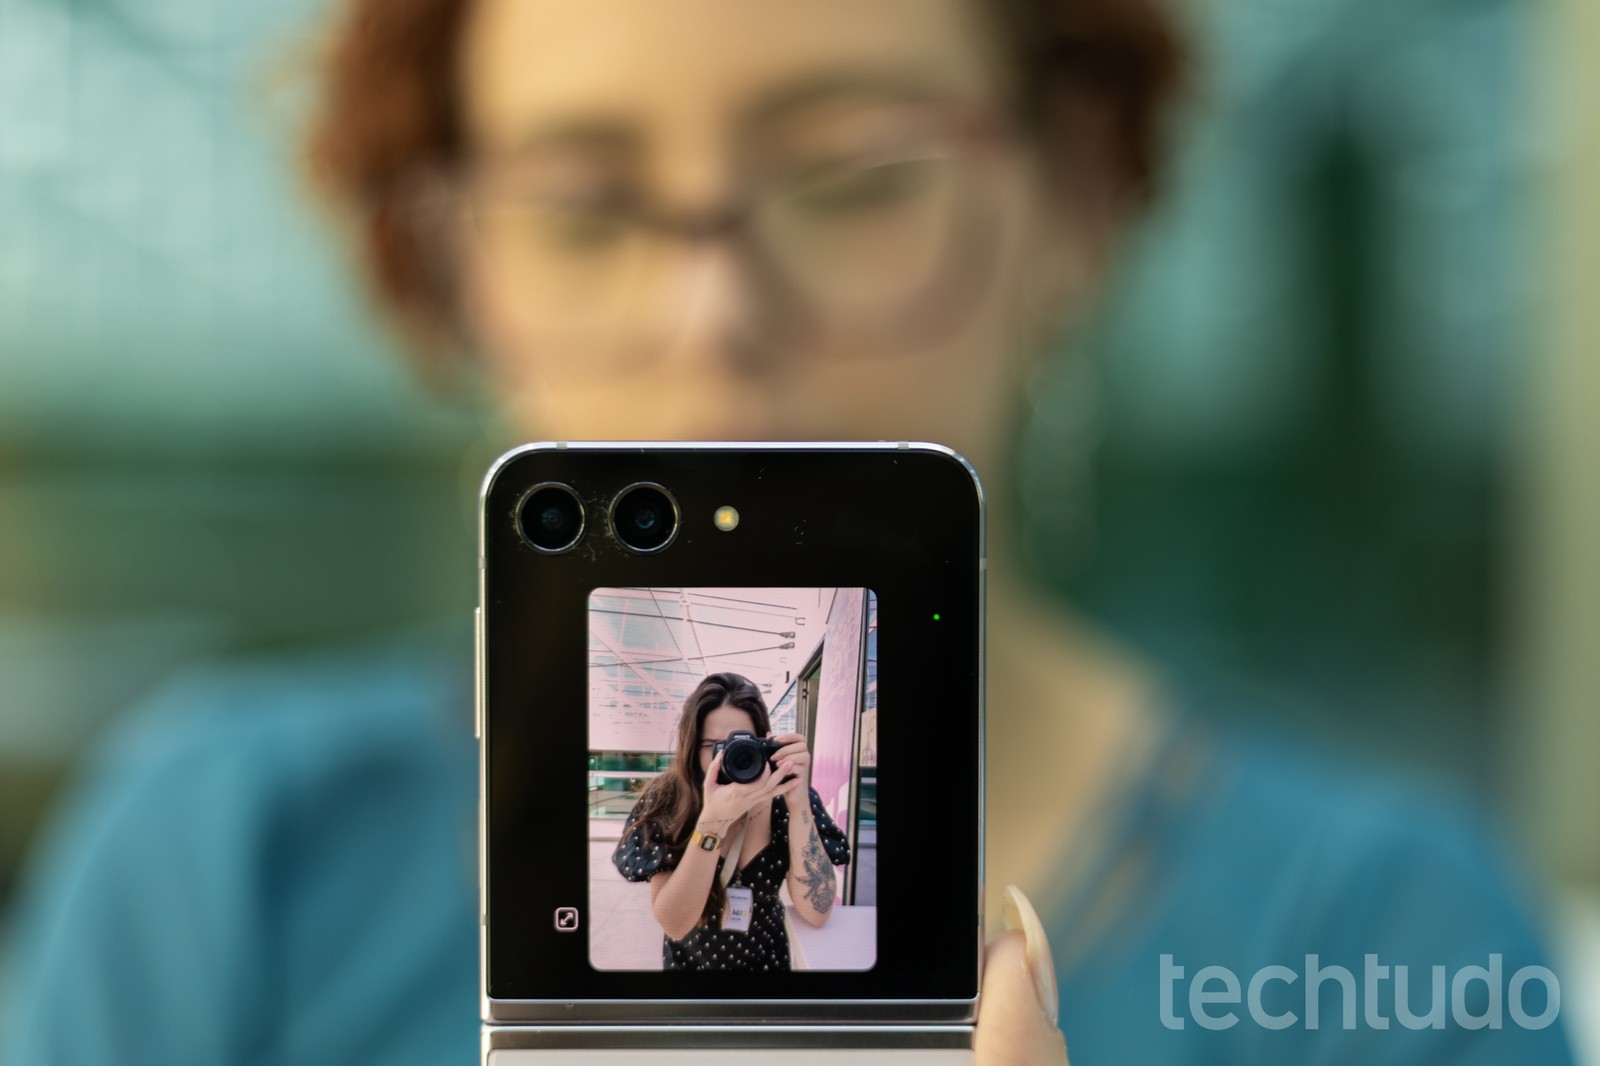 Pré-visualização da câmera traseira na tela externa — Foto: Mariana Saguias/TechTudo